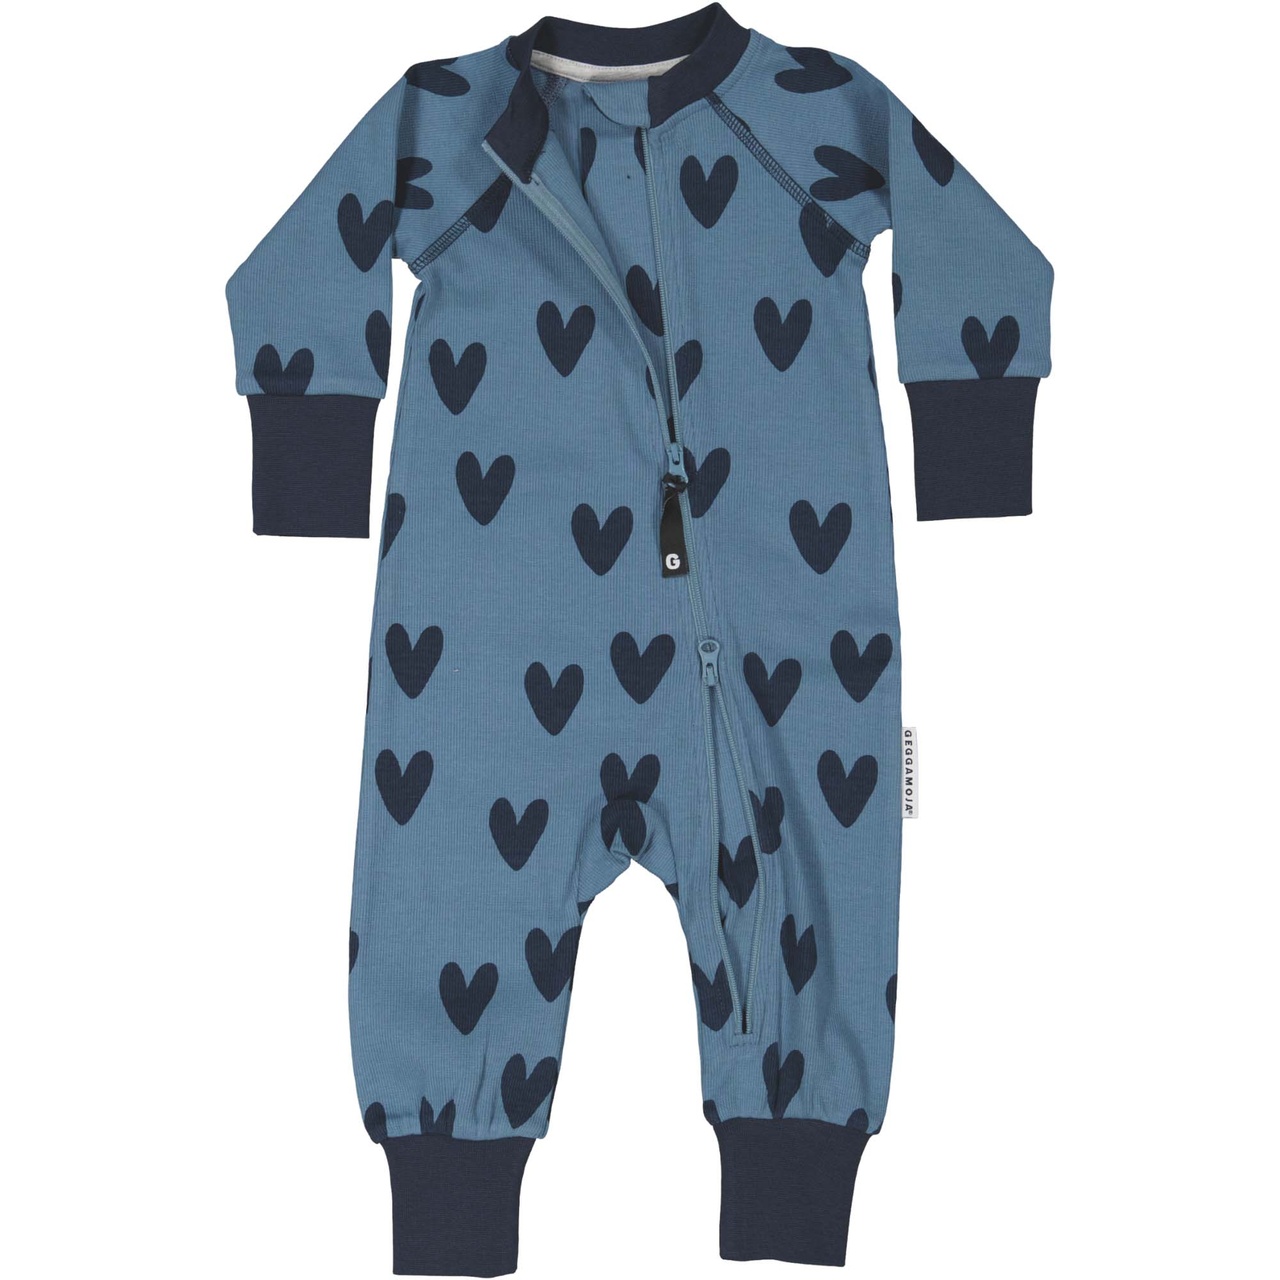 Pyjamas i bomullsribb blå hjärta 110/116